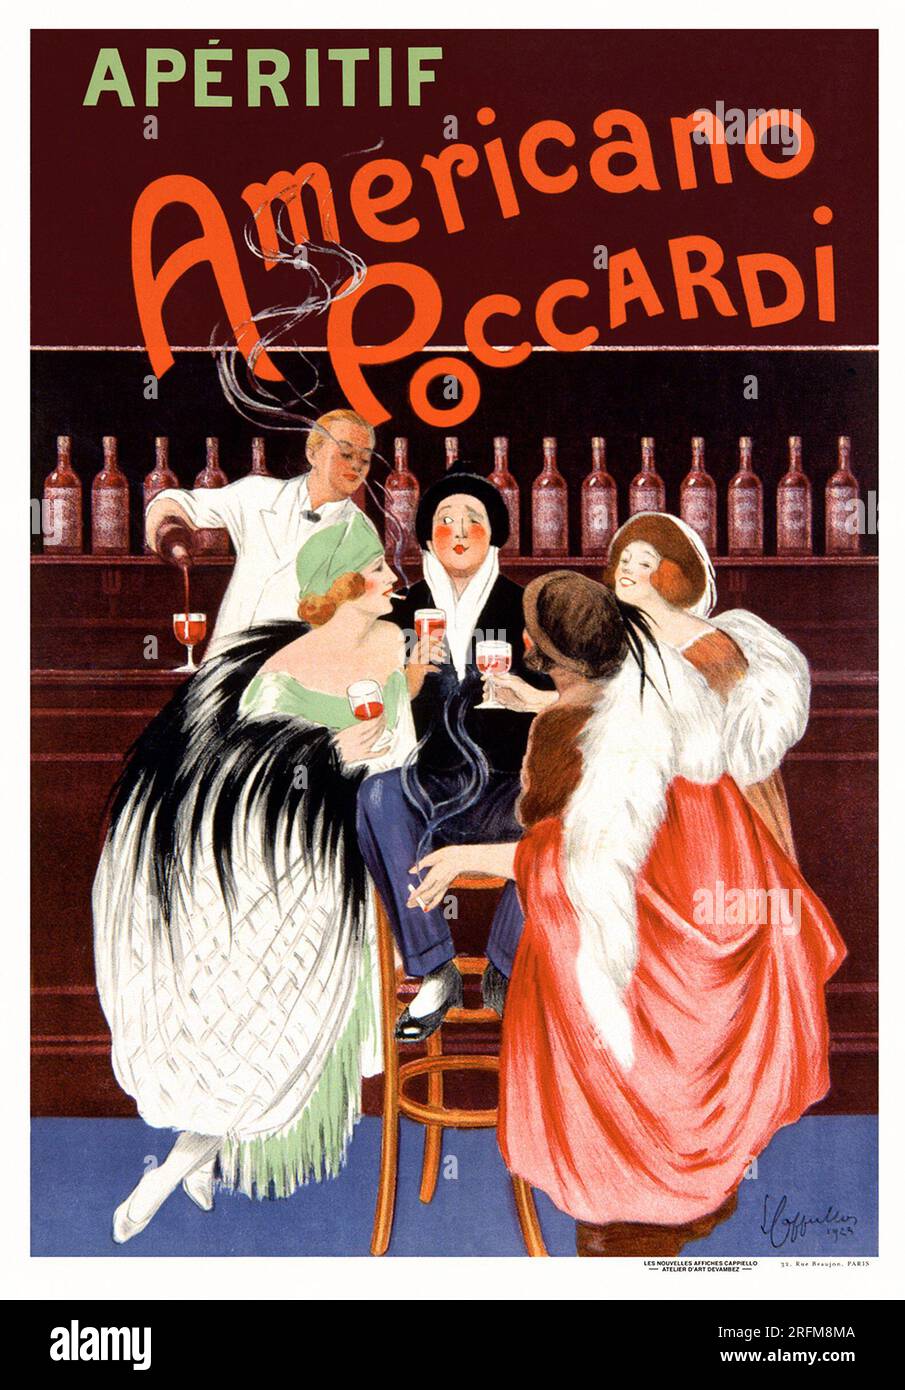 Aperitif Americano Poccardi, France 1923 - Vintage advertisement poster by  Leonetto Cappiello Stock Photo - Alamy